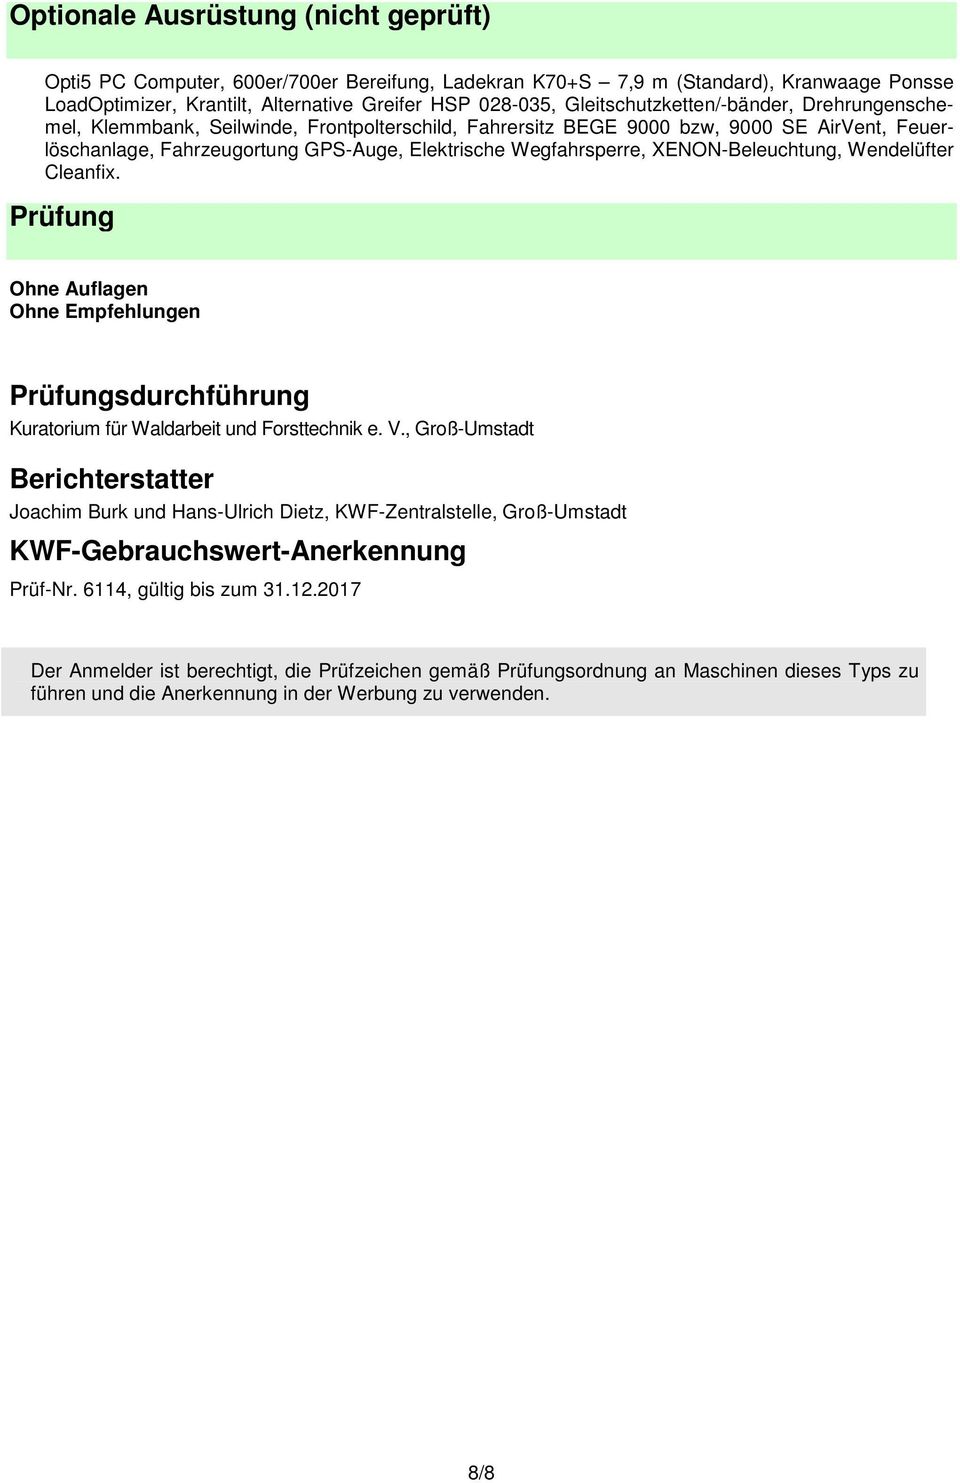 XENON-Beleuchtung, Wendelüfter Cleanfix. Prüfung Ohne Auflagen Ohne Empfehlungen Prüfungsdurchführung Kuratorium für Waldarbeit und Forsttechnik e. V.